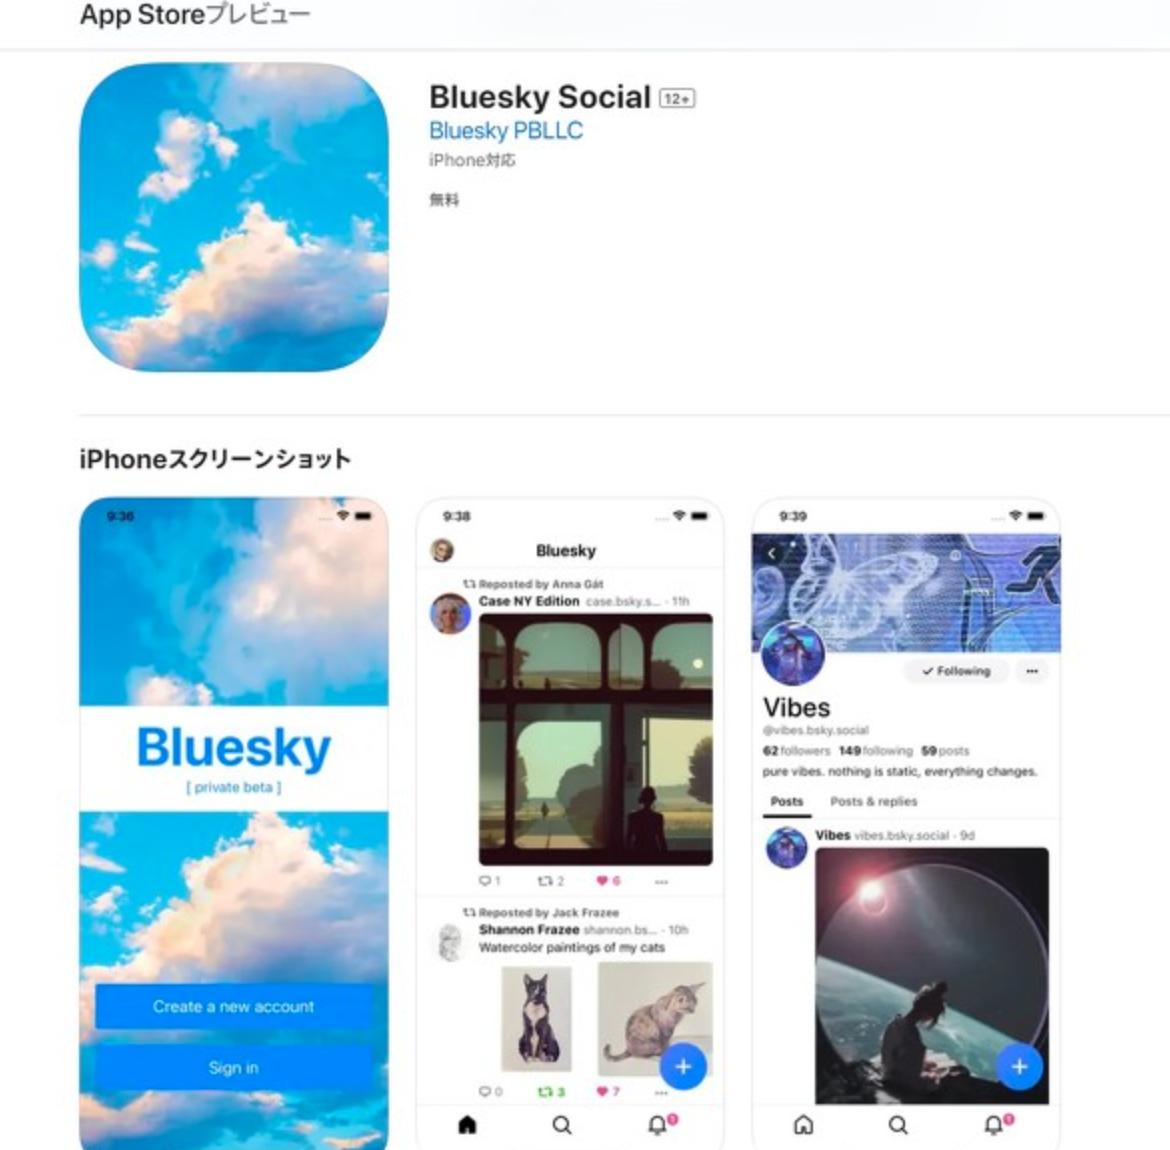 jack dorseyin bluesky social uygulamasi app storedadff